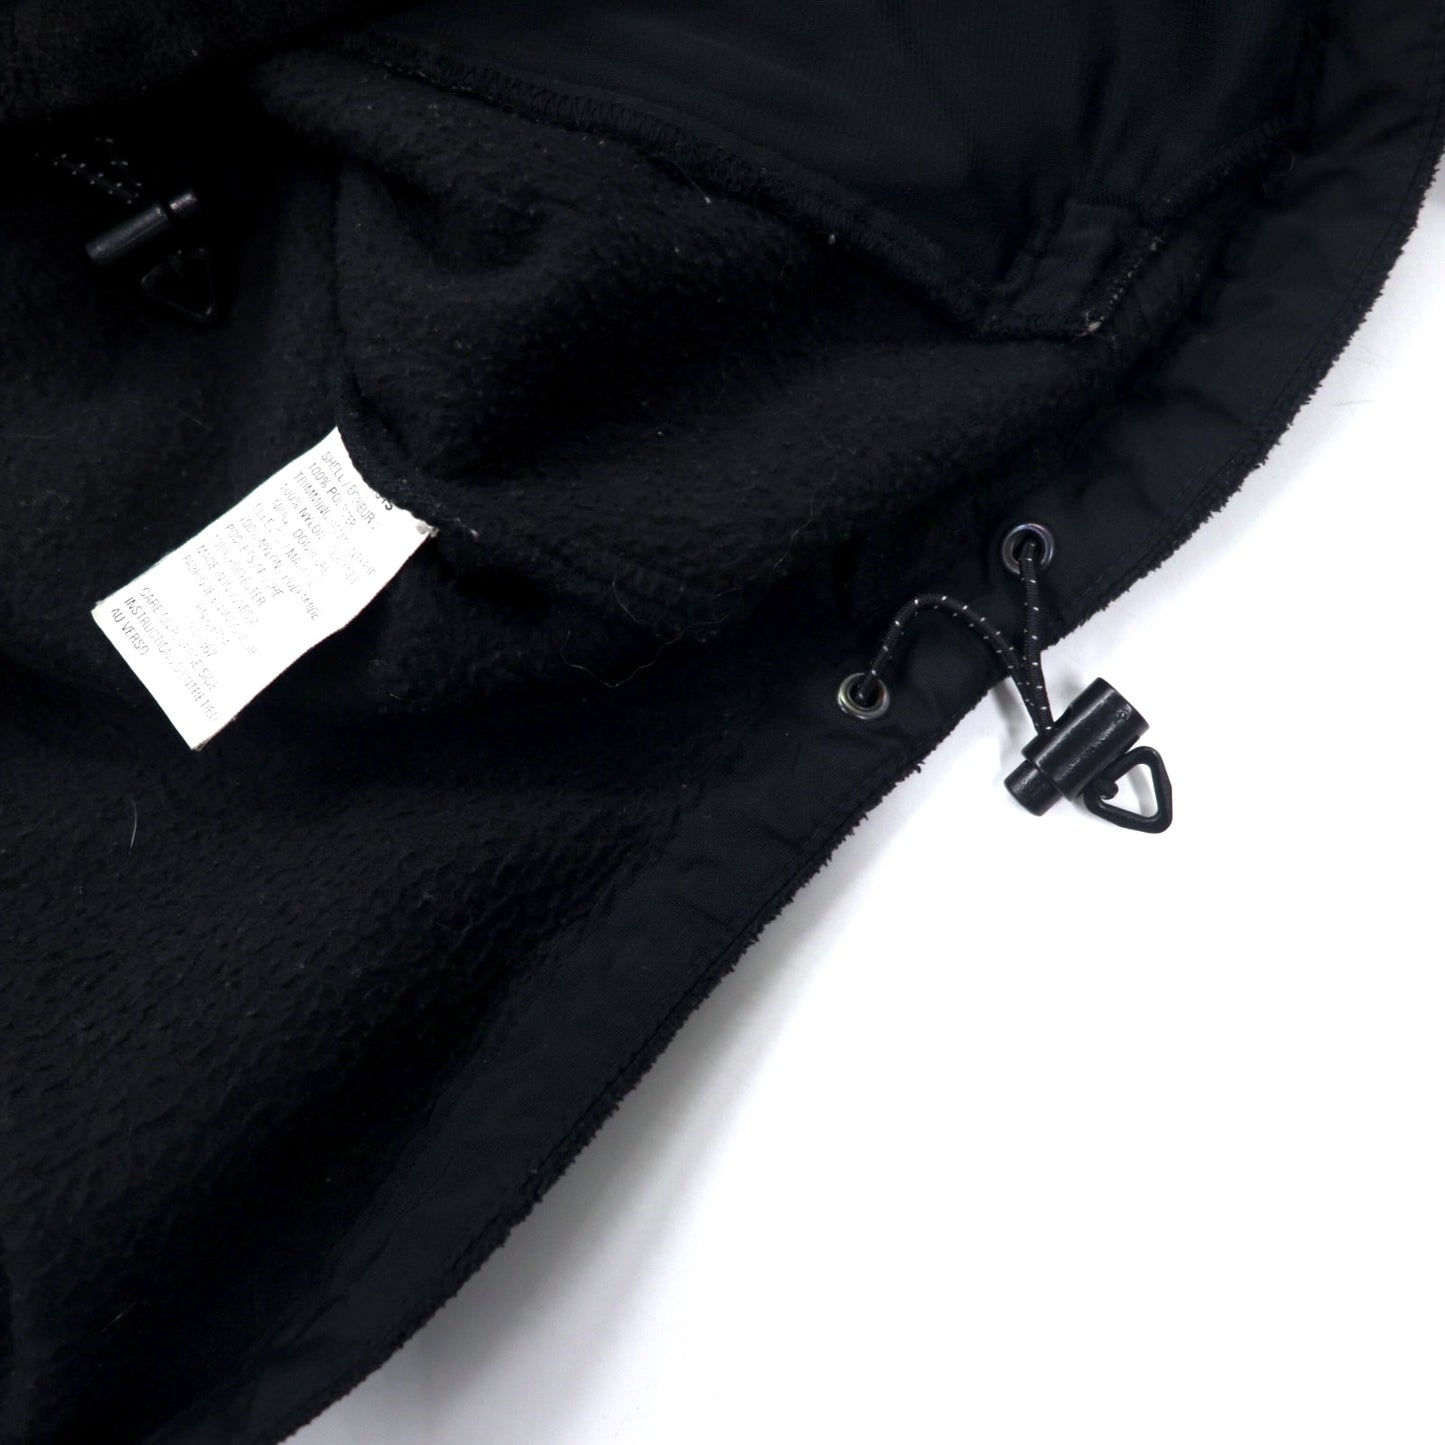 Columbia 90年代 ナイロン切り替え フルジップ フリースジャケット L ブラック ポリエステル ワンポイントロゴ刺繍 ビッグサイズ XM7313